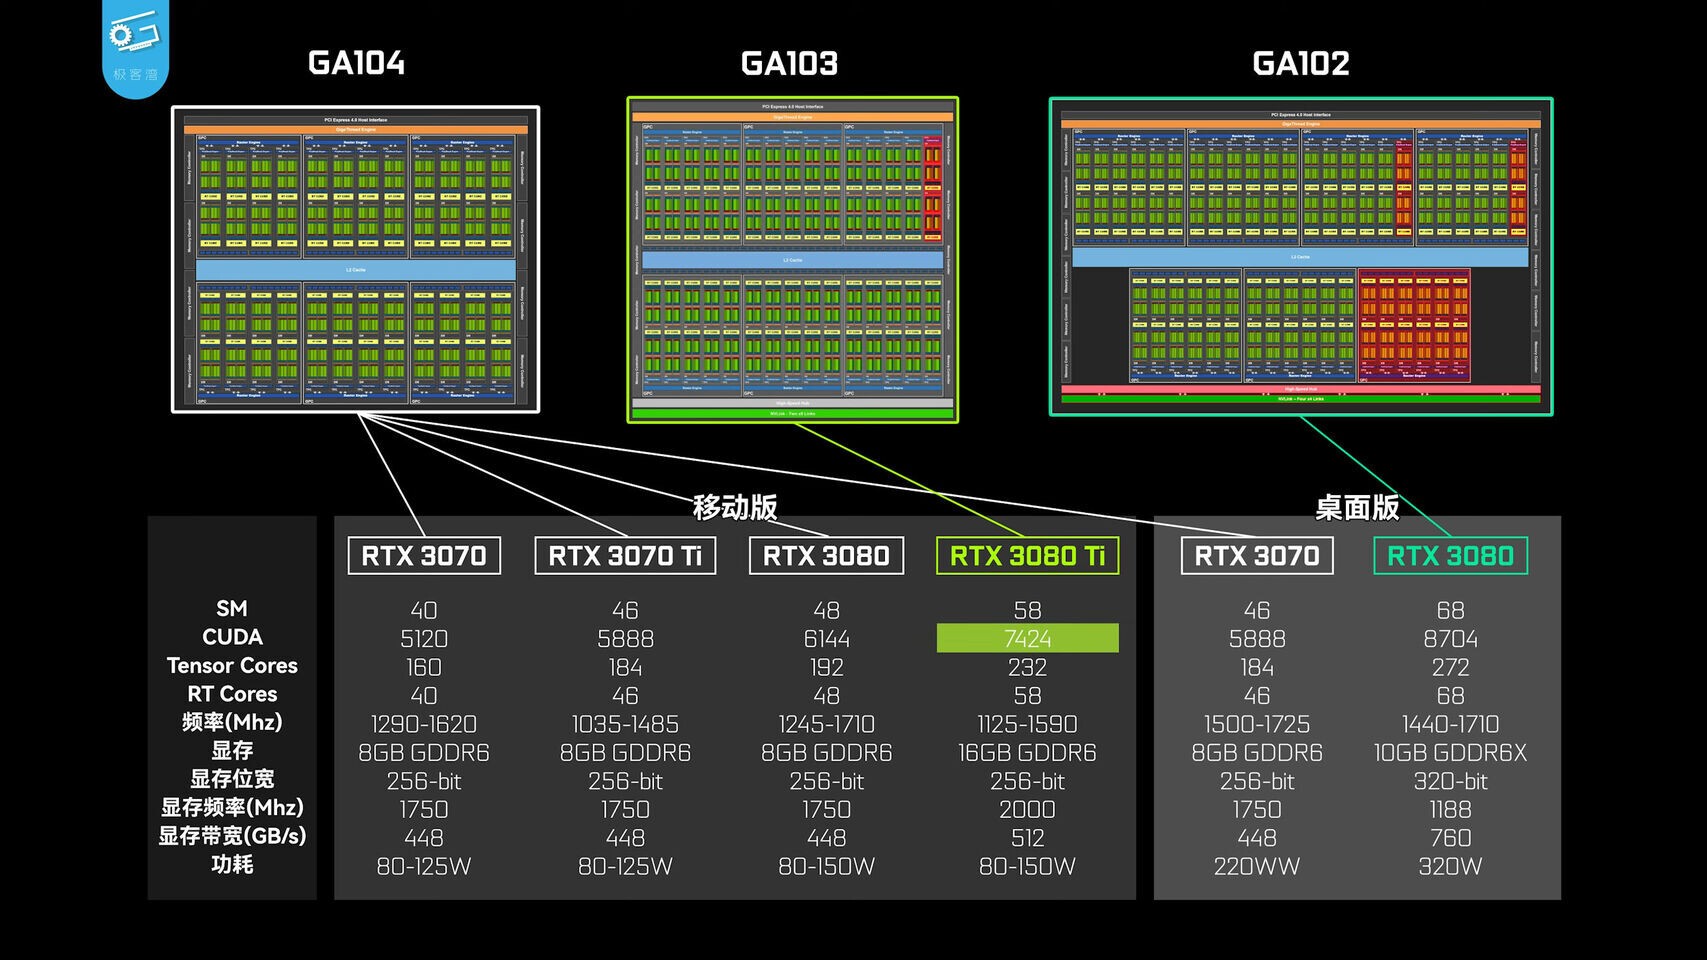 ظهور صور نواة GA103 الرسومية الخاصة ببطاقة GeForce RTX 3080 Ti